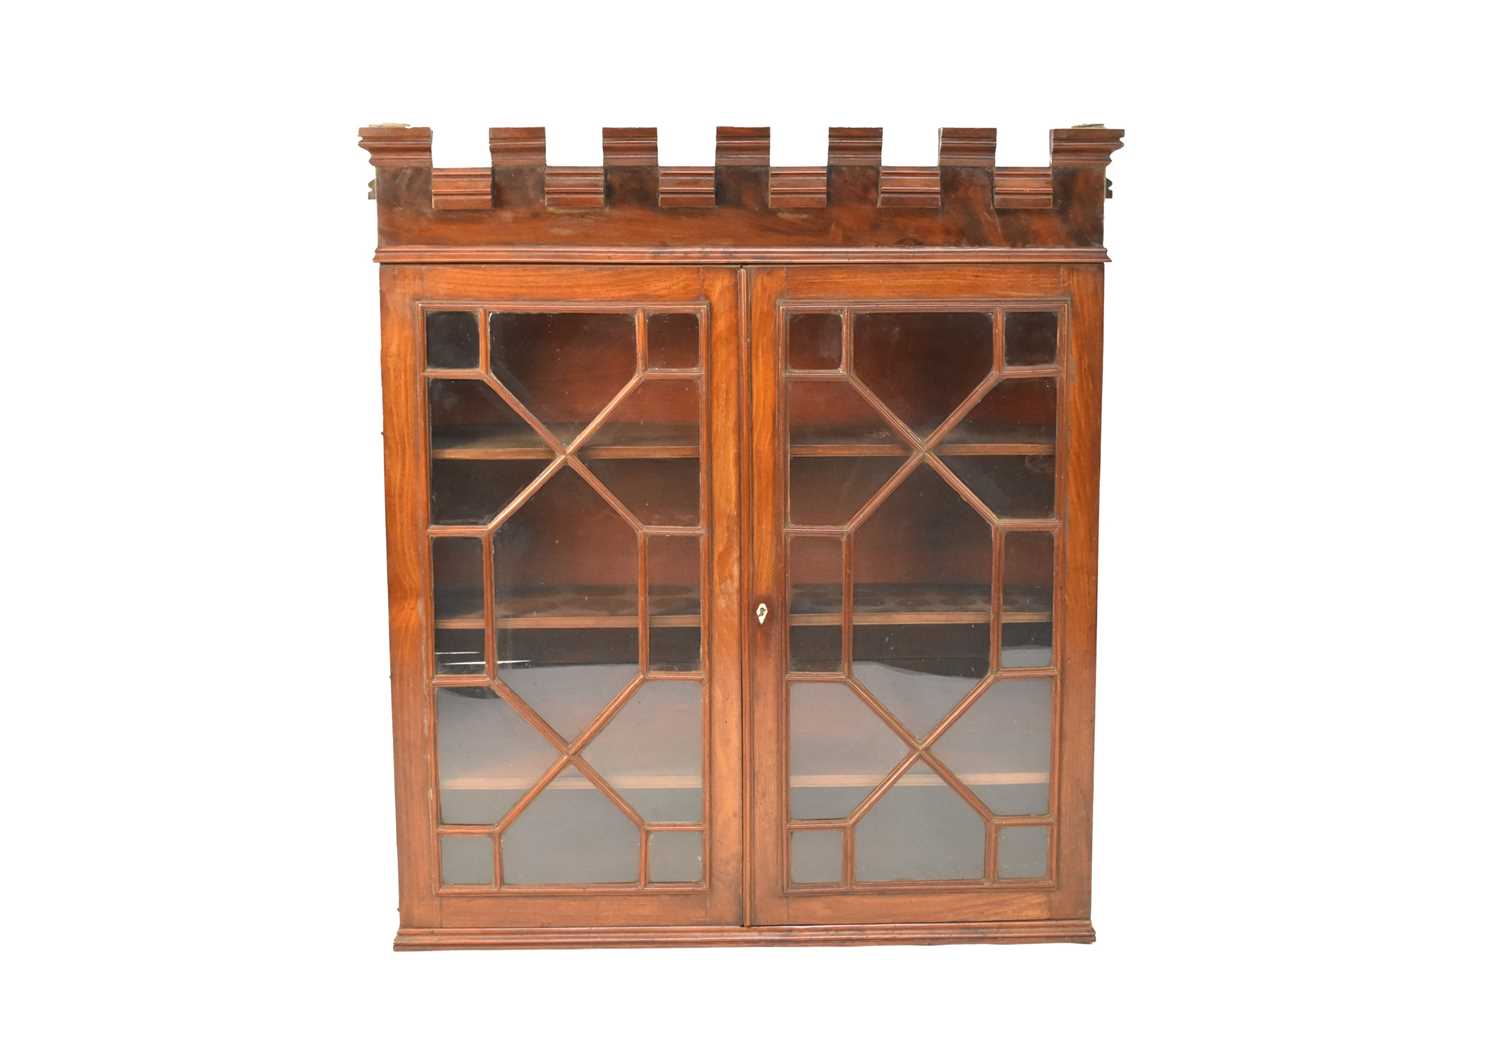 Lot 493 - An early 19th century mahogany bookcase